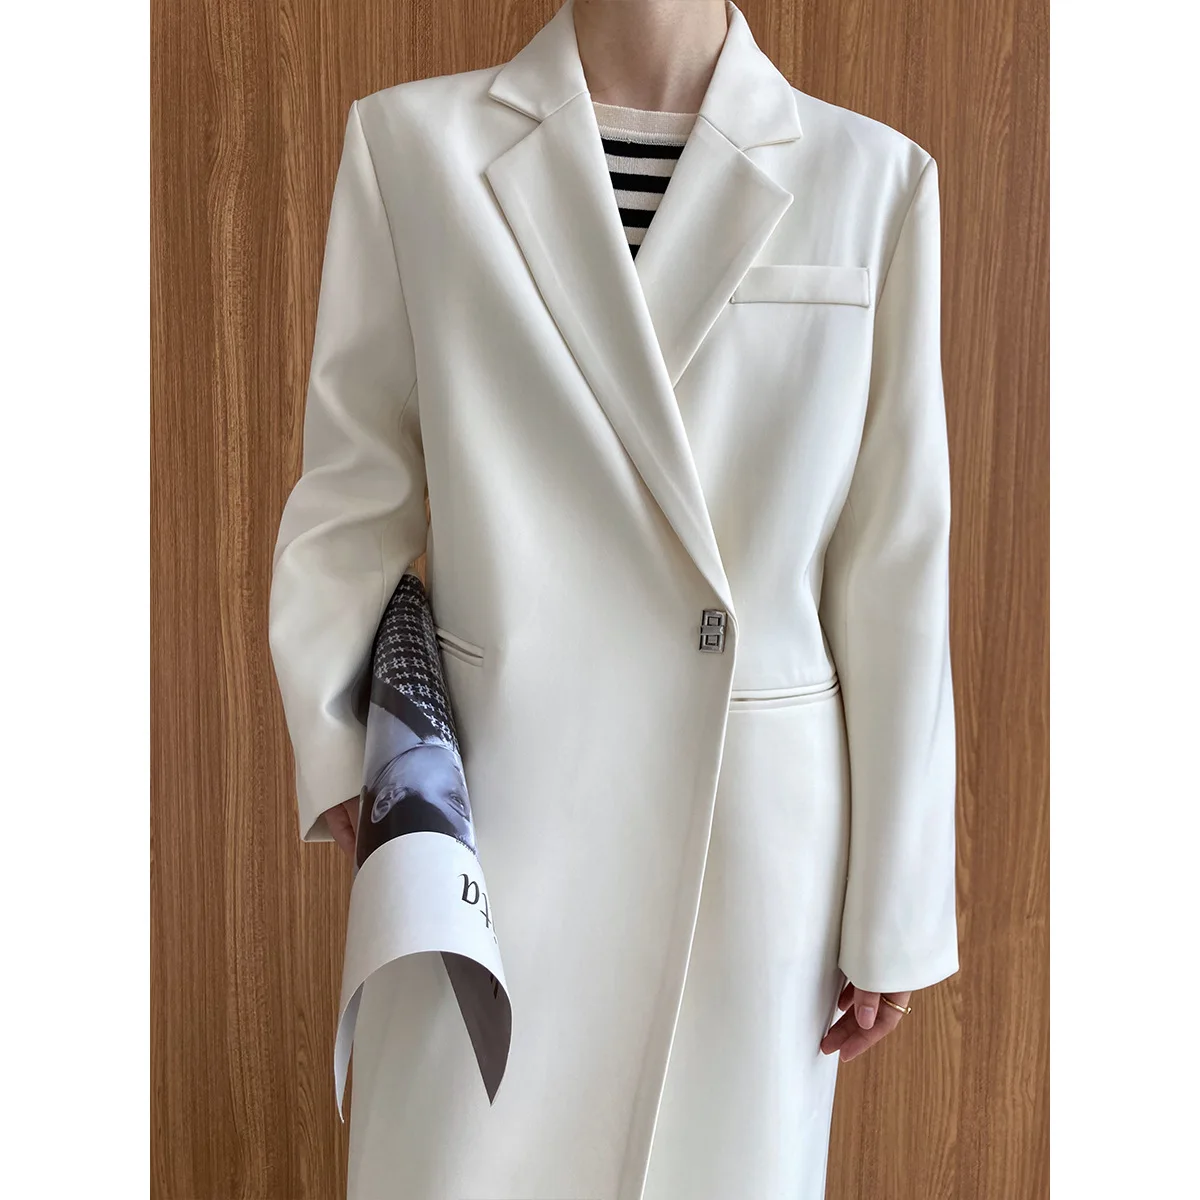 Fashionable mid length suit coat for women's autumn new loose temperament lock button design suit